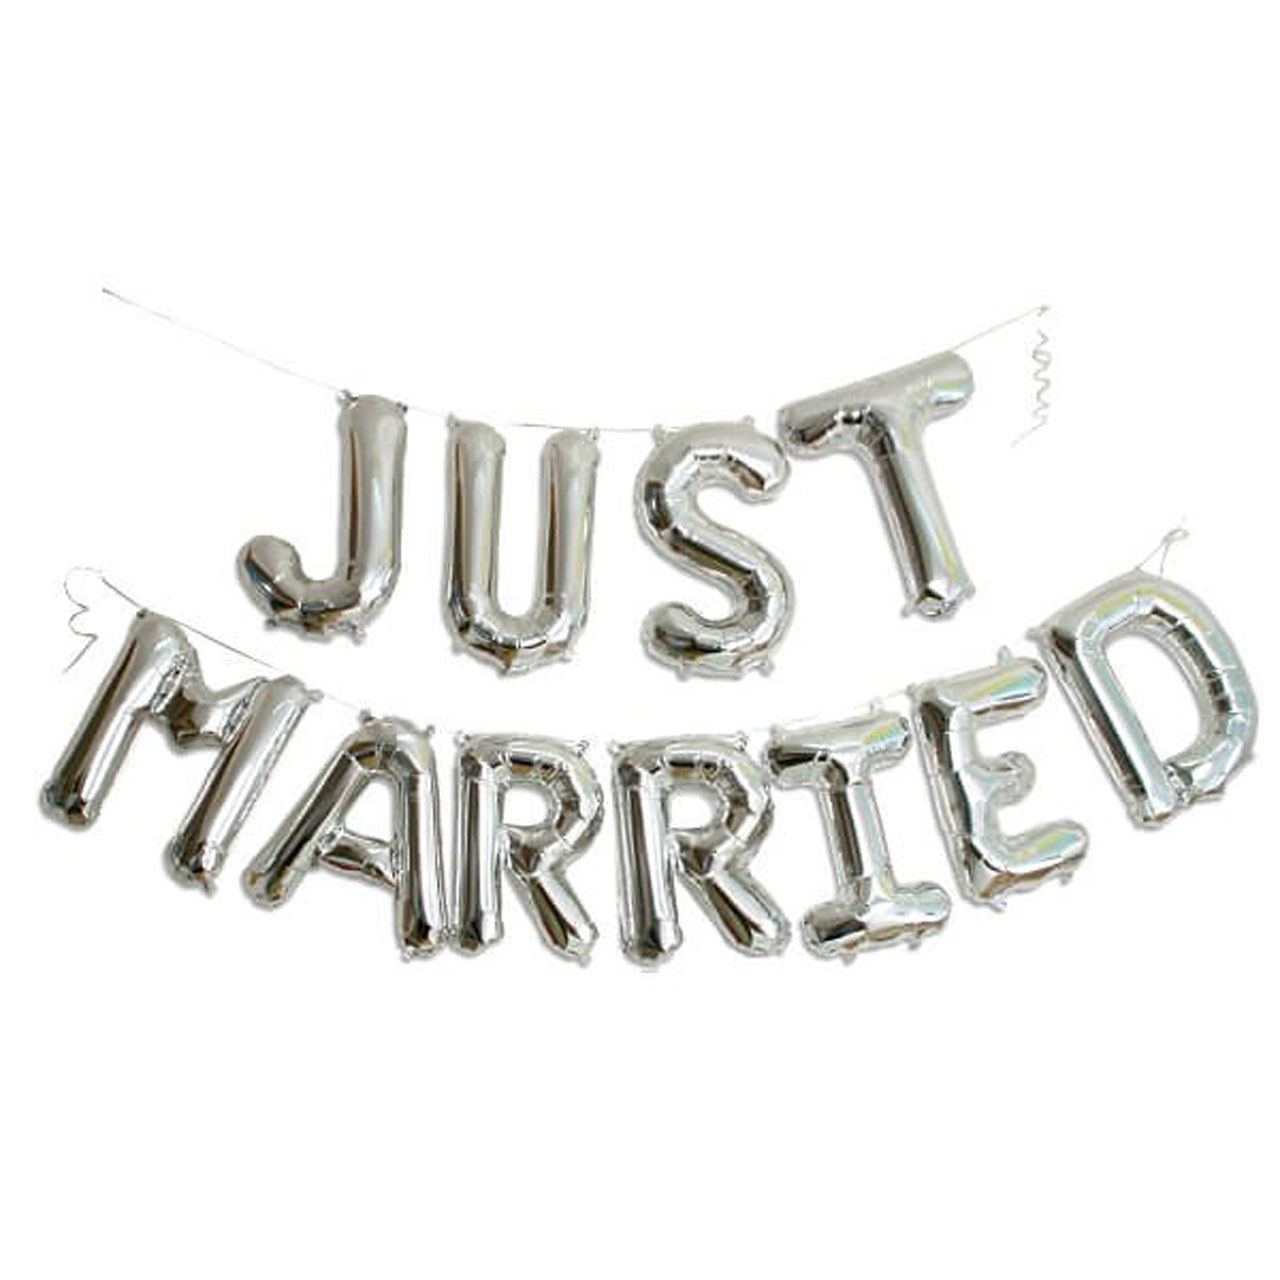 Girlande - Just Married - 150cm Länge - Hochzeitsdeko 